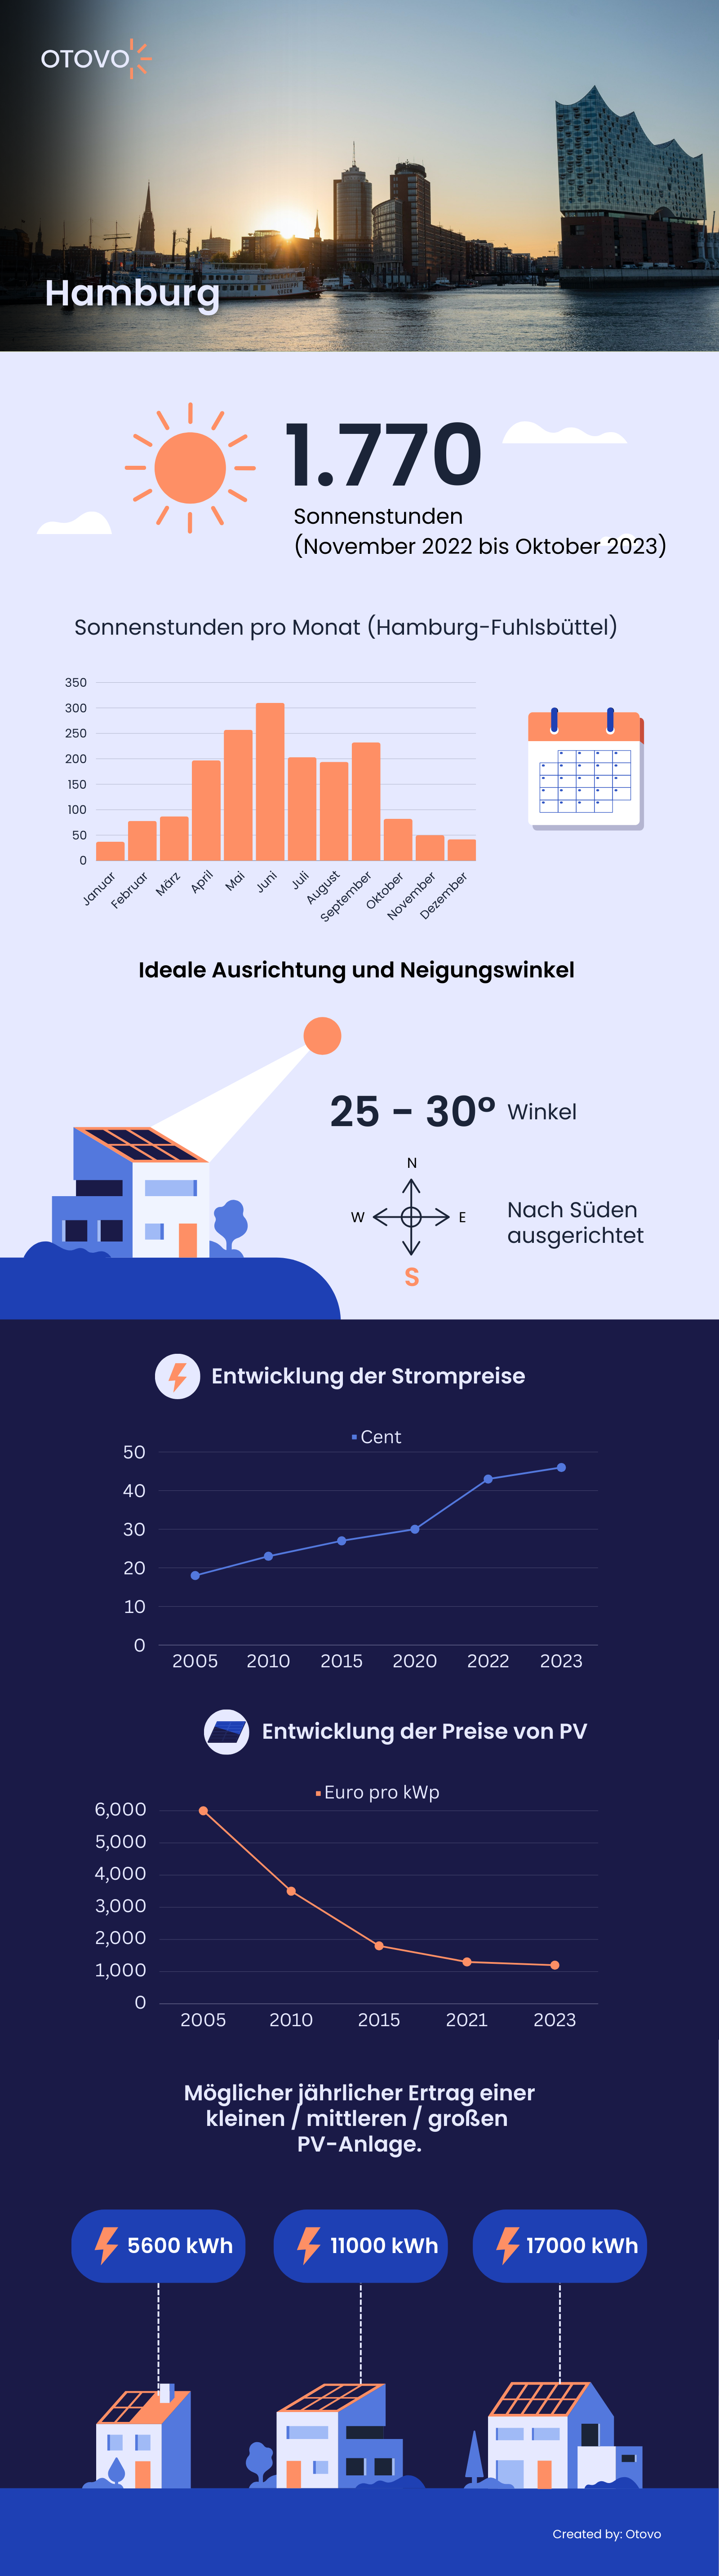 Infografik zu Solaranlagen in Hamburg